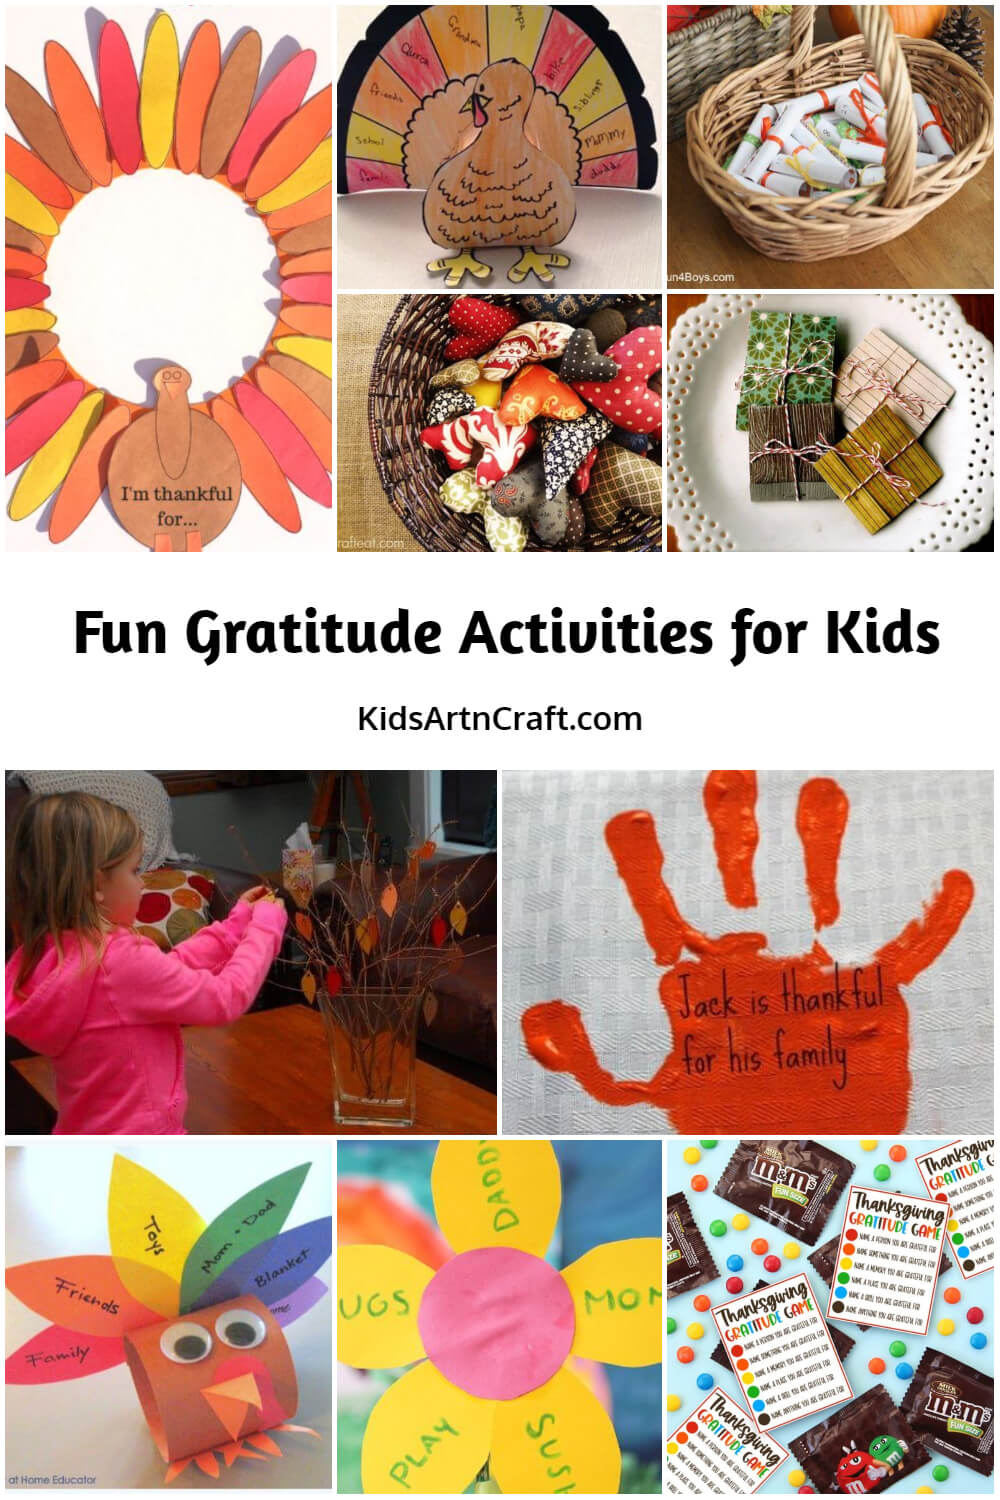  Fun Gratitude Activities for Kids